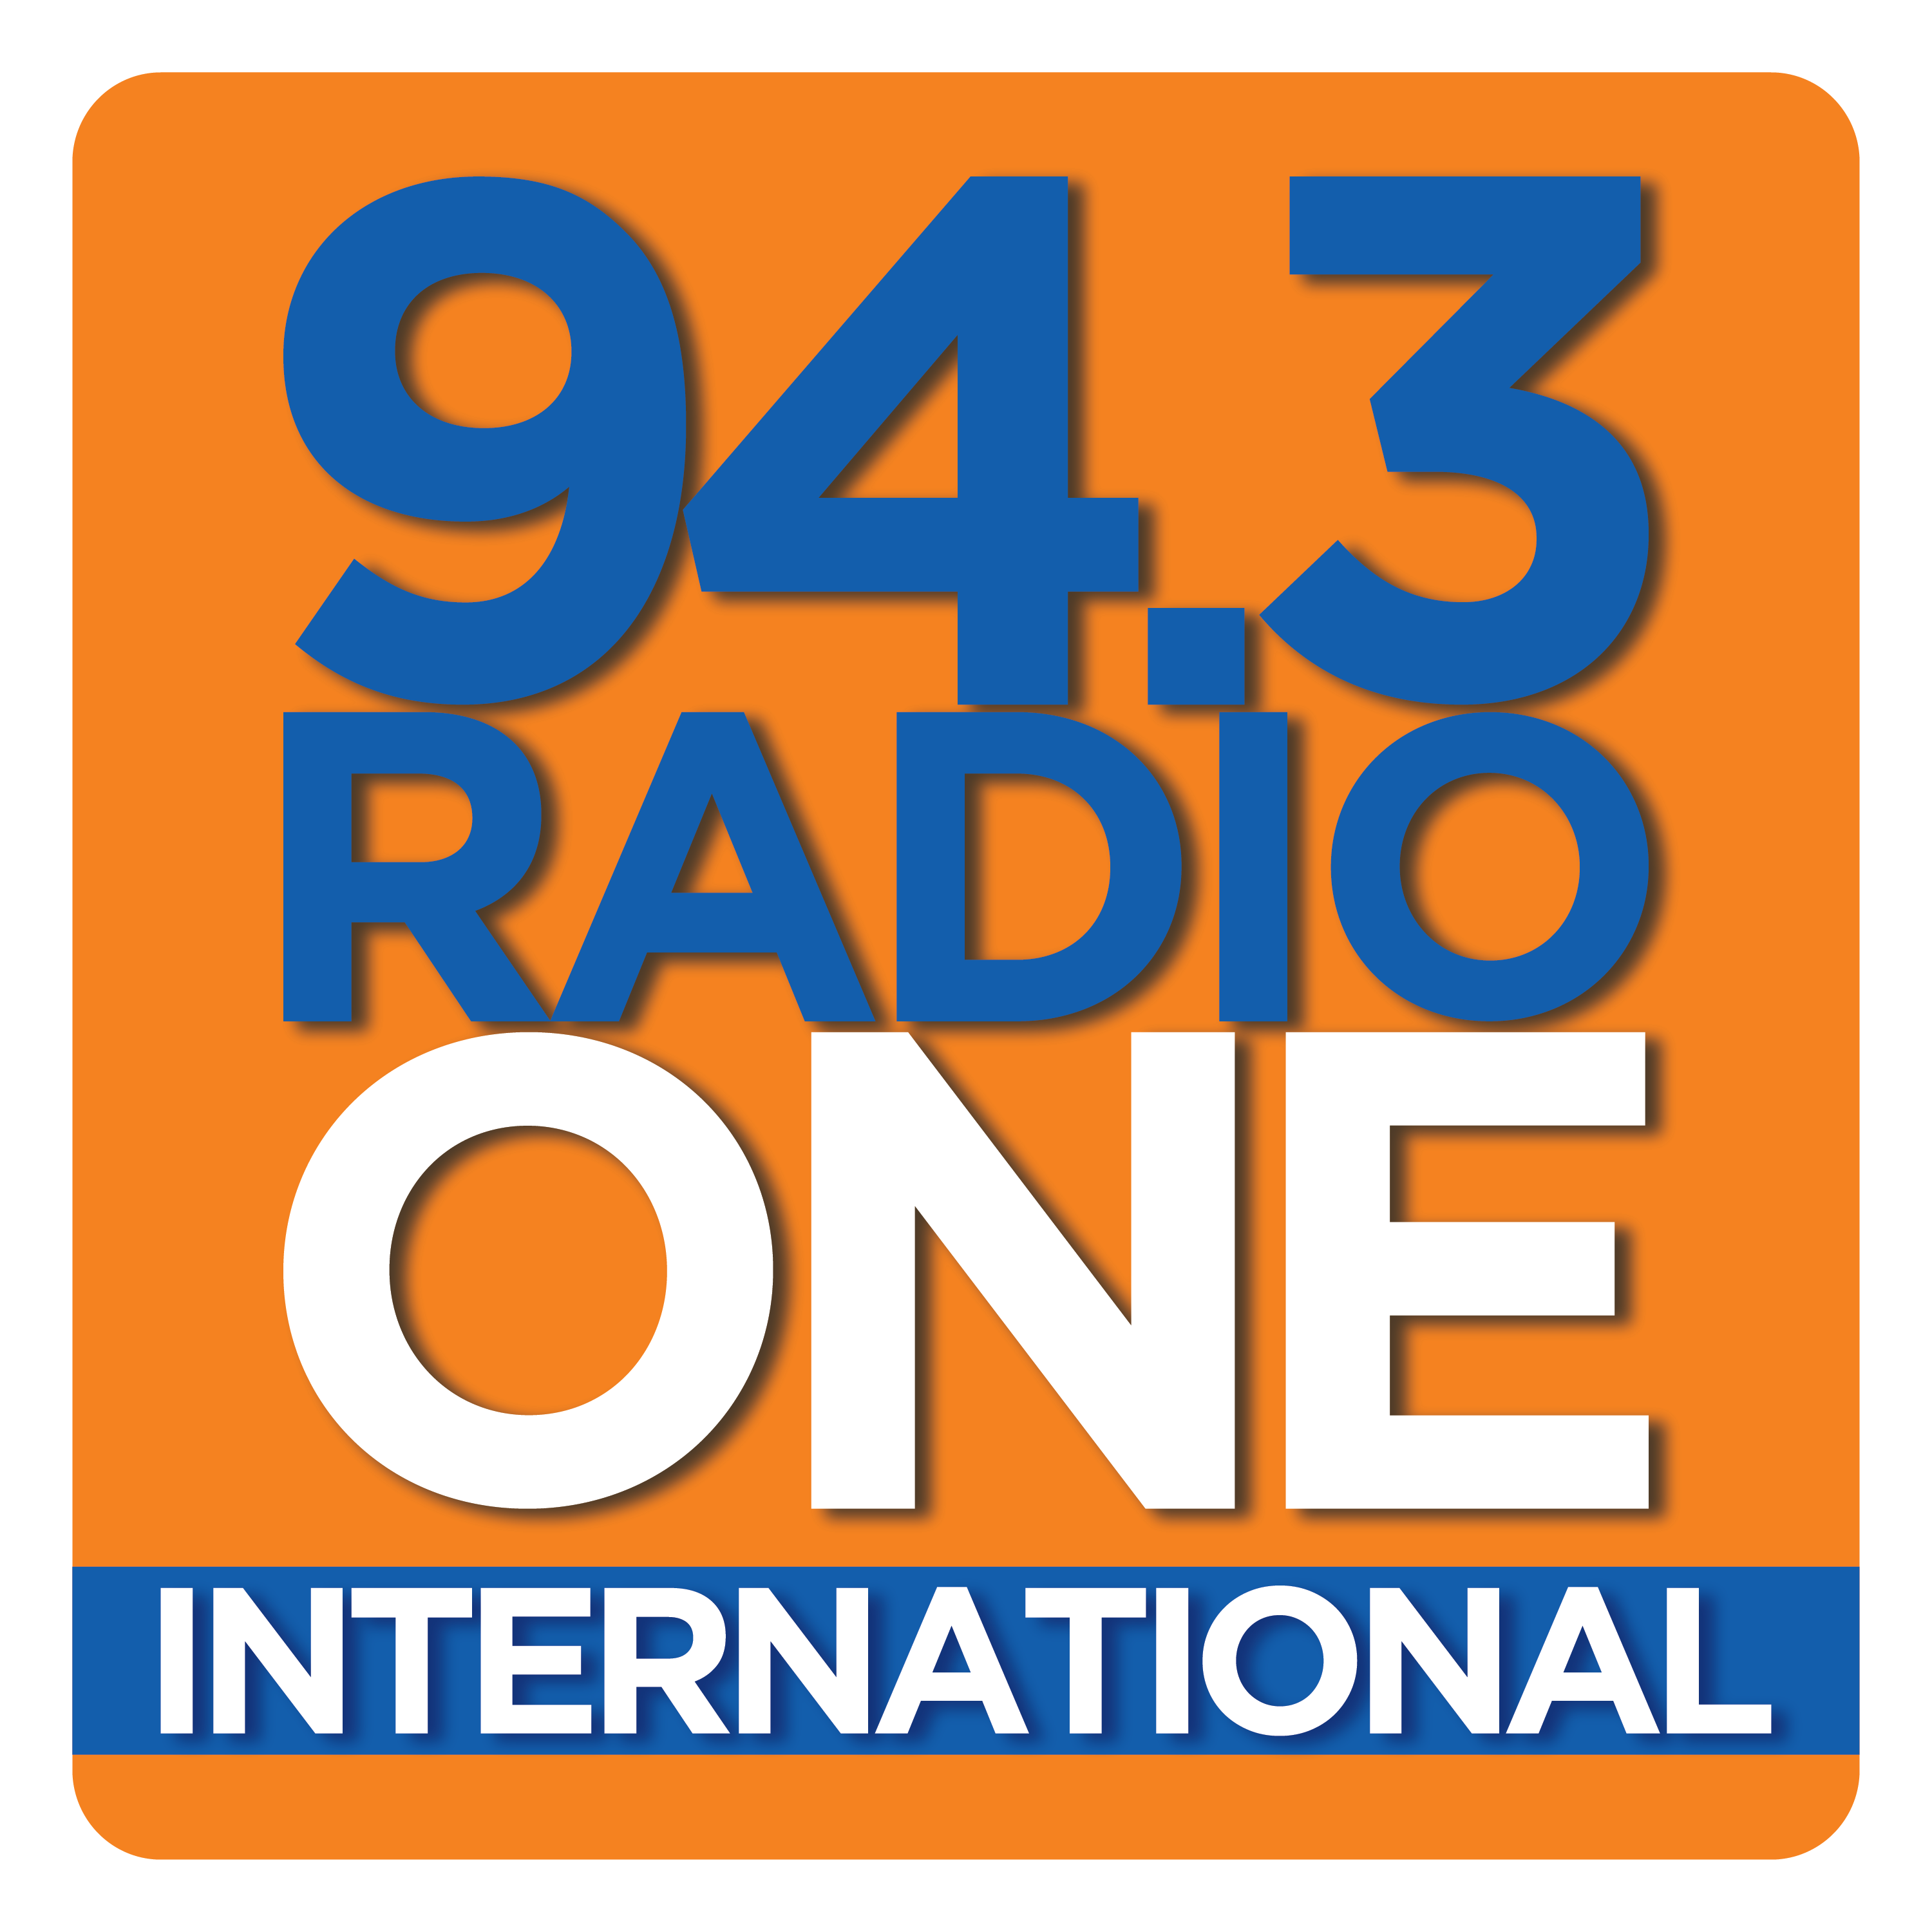 Radio One 94.3